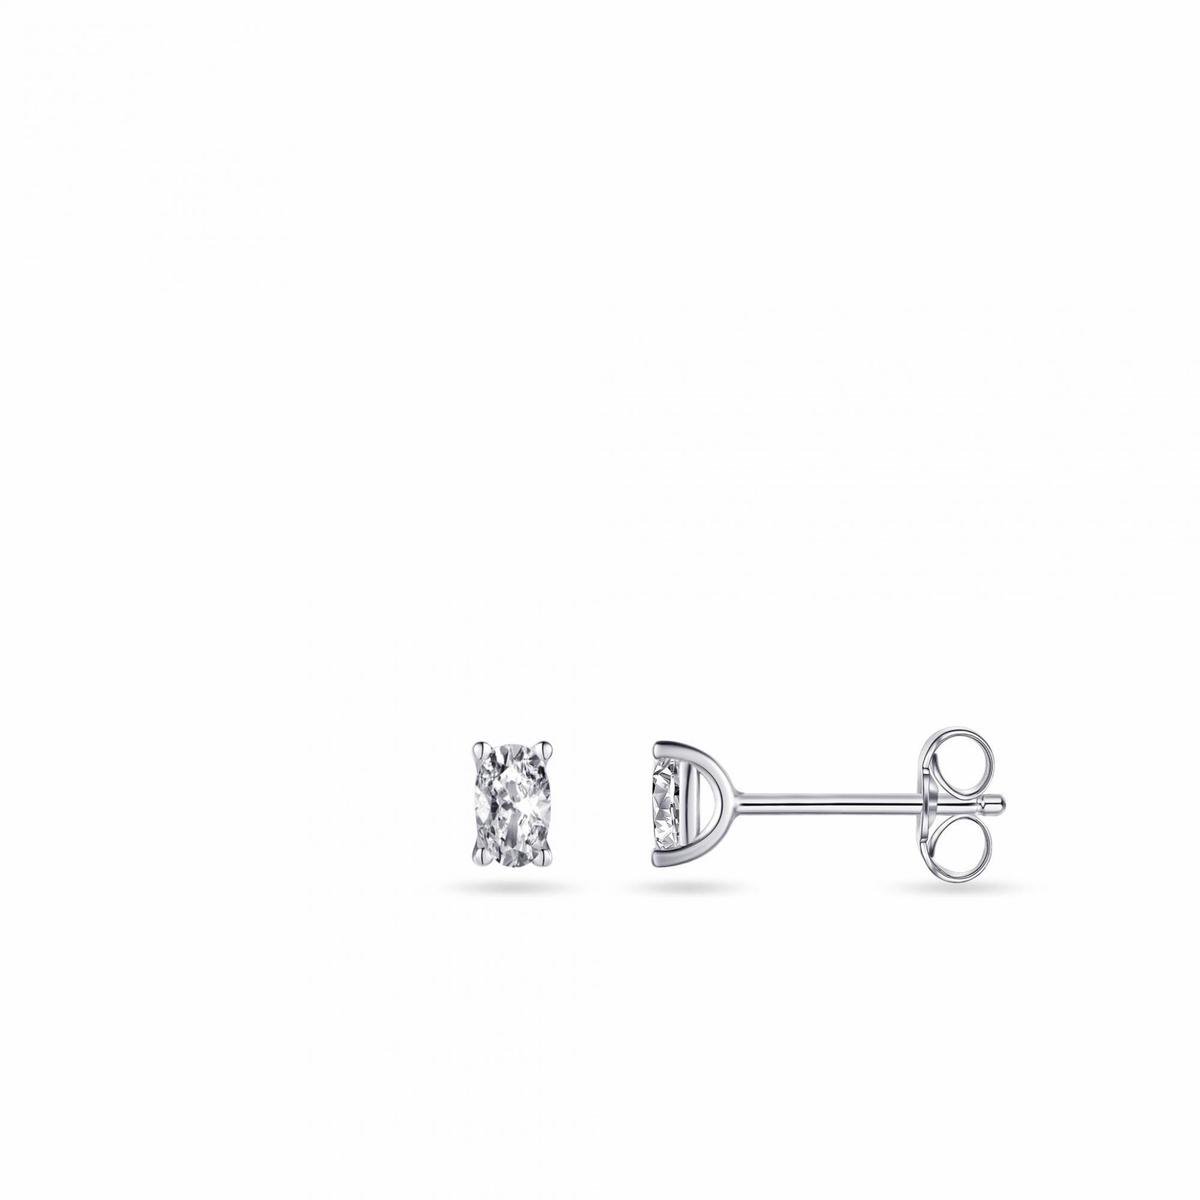 Jewels Inc. - Oorsteker - Solitaire gezet met een Ovaal geslepen Zirkonia Steen - 5mm x 3mm - Gerhodineerd Zilver 925